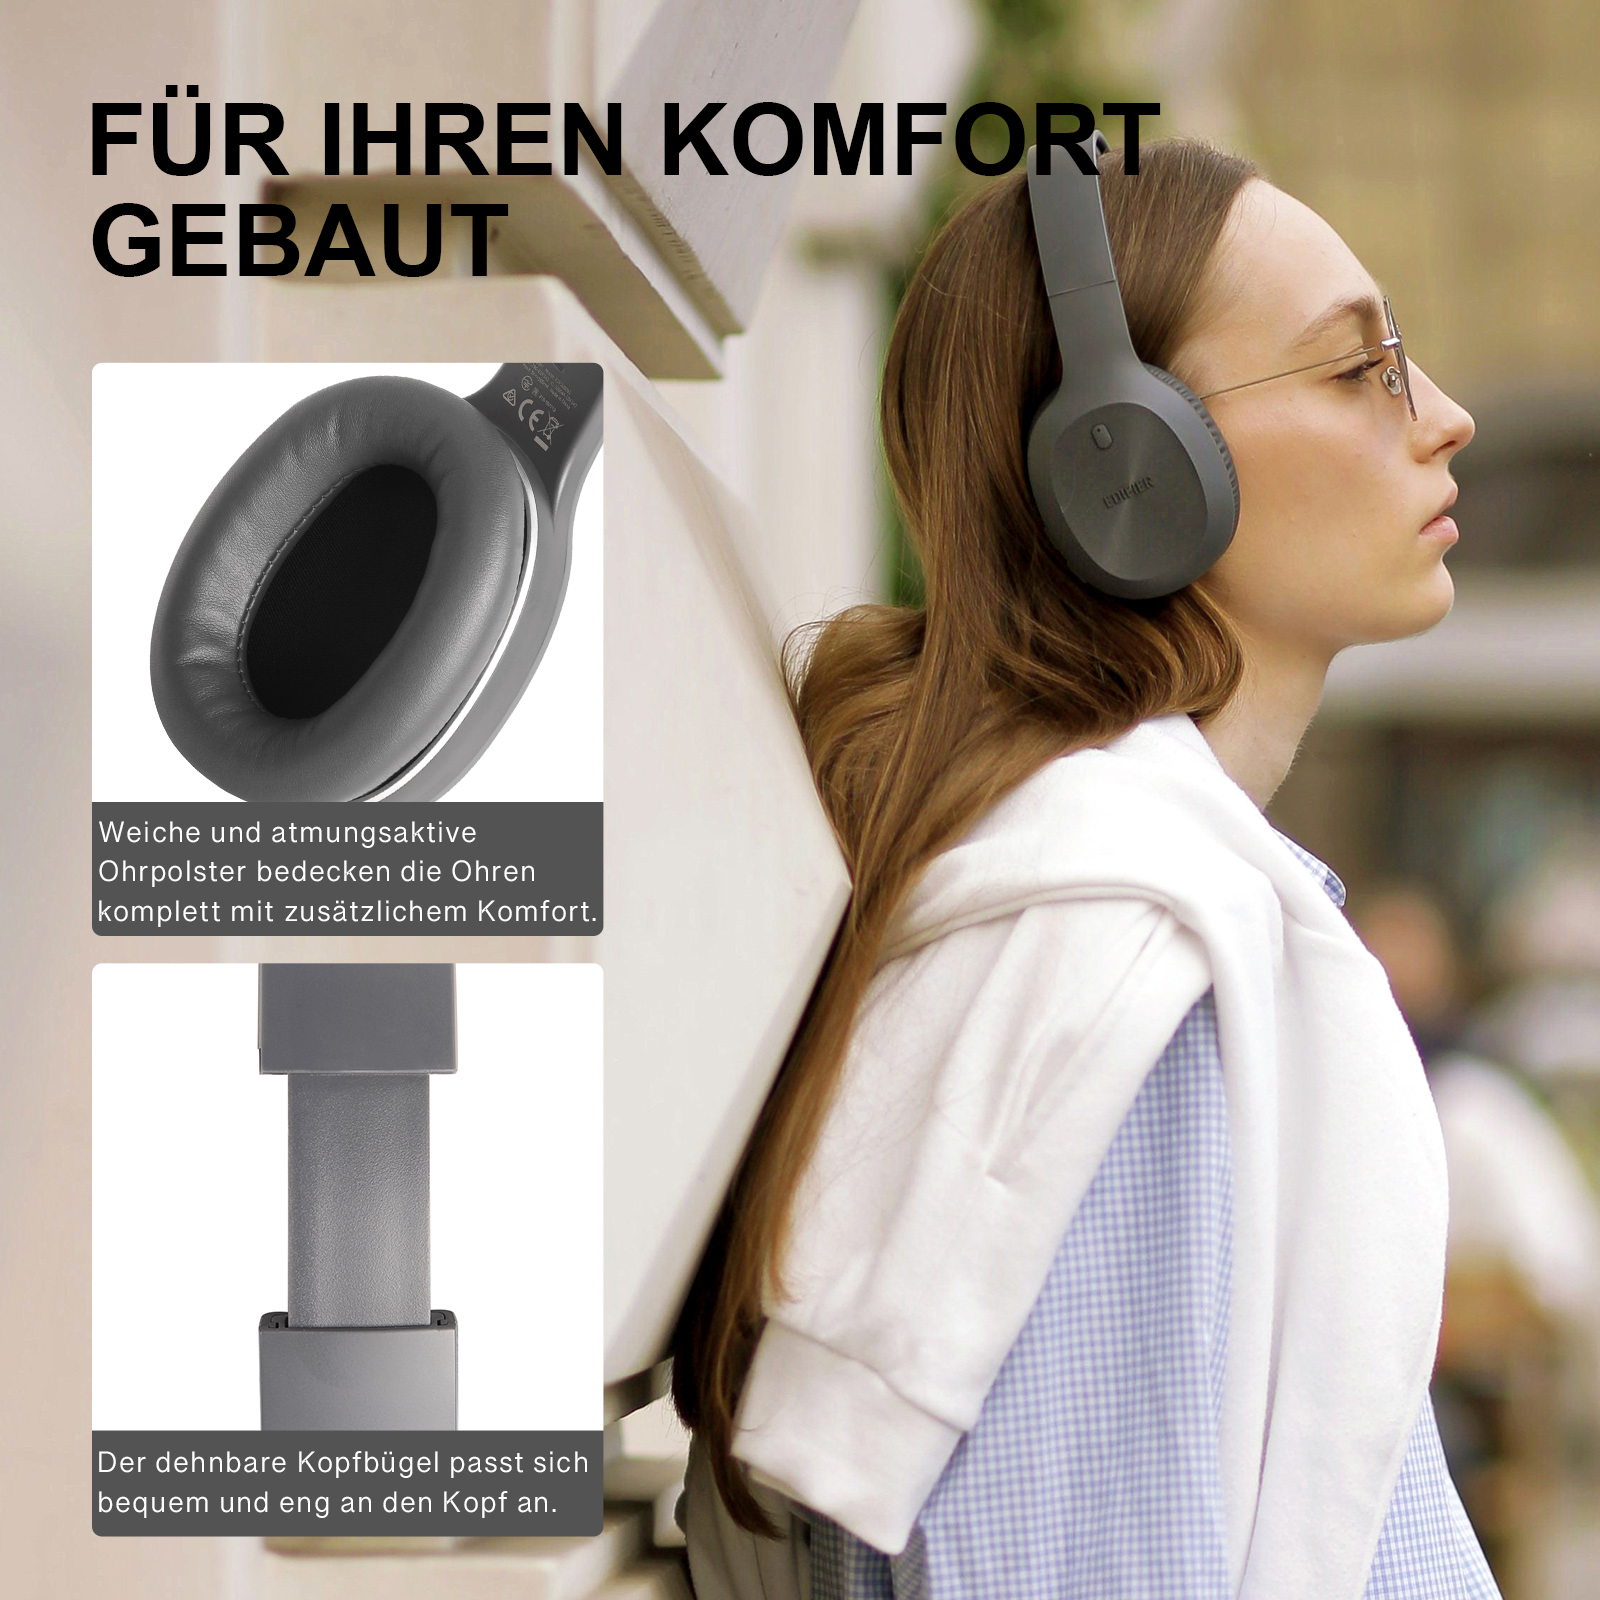 EDIFIER W600BT, Grau Bluetooth Bluetooth-Kopfhörer On-ear